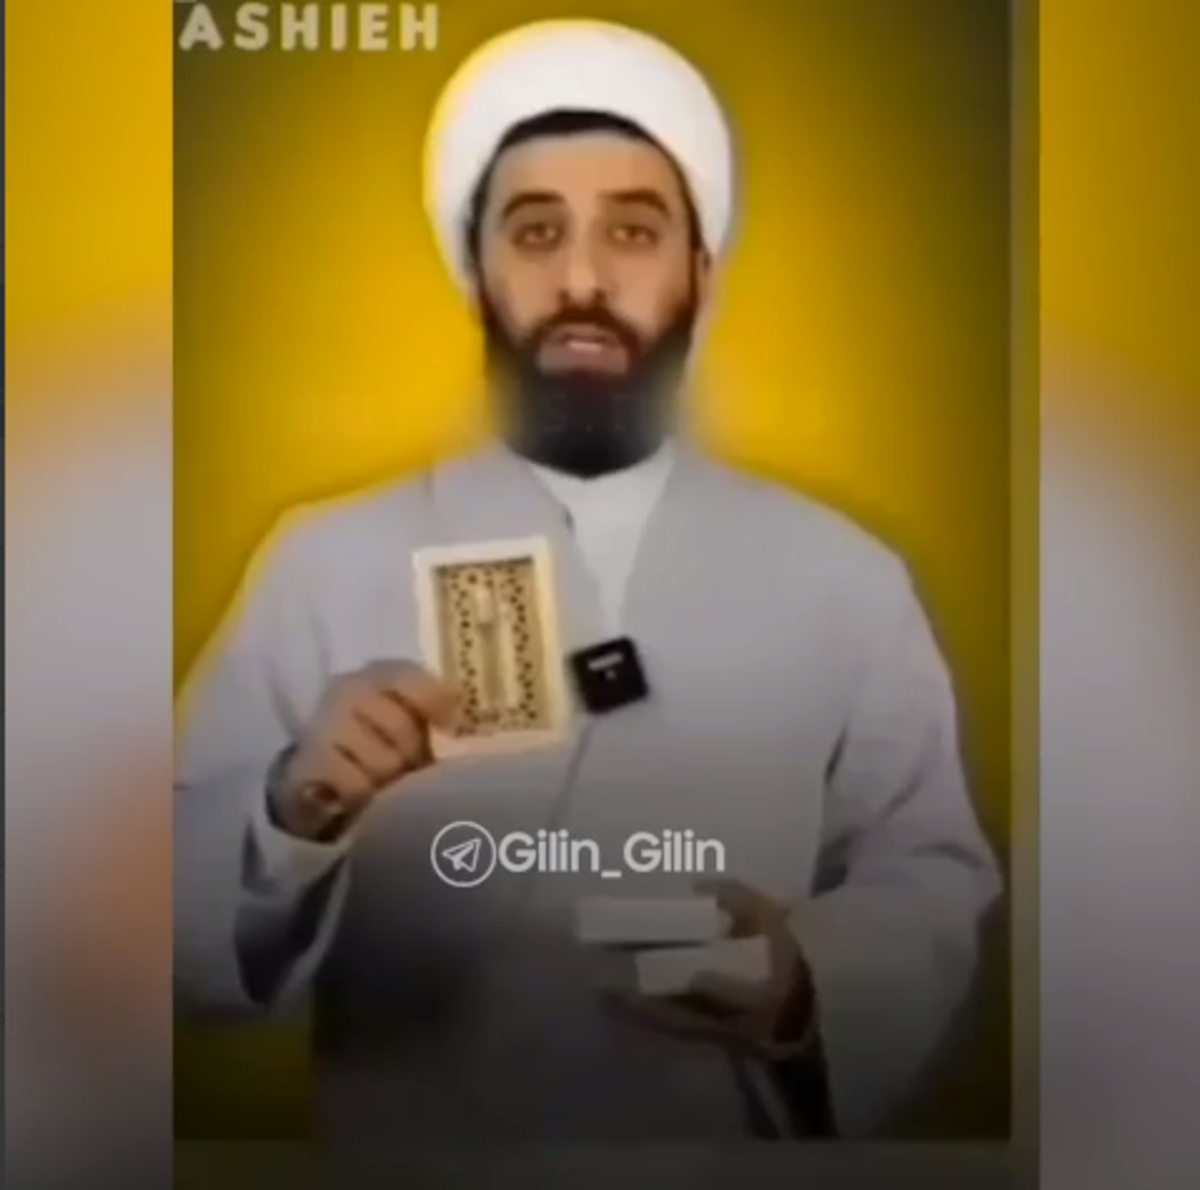 تبلیغ عطر توسط یک روحانی در اینستاگرام (فیلم)